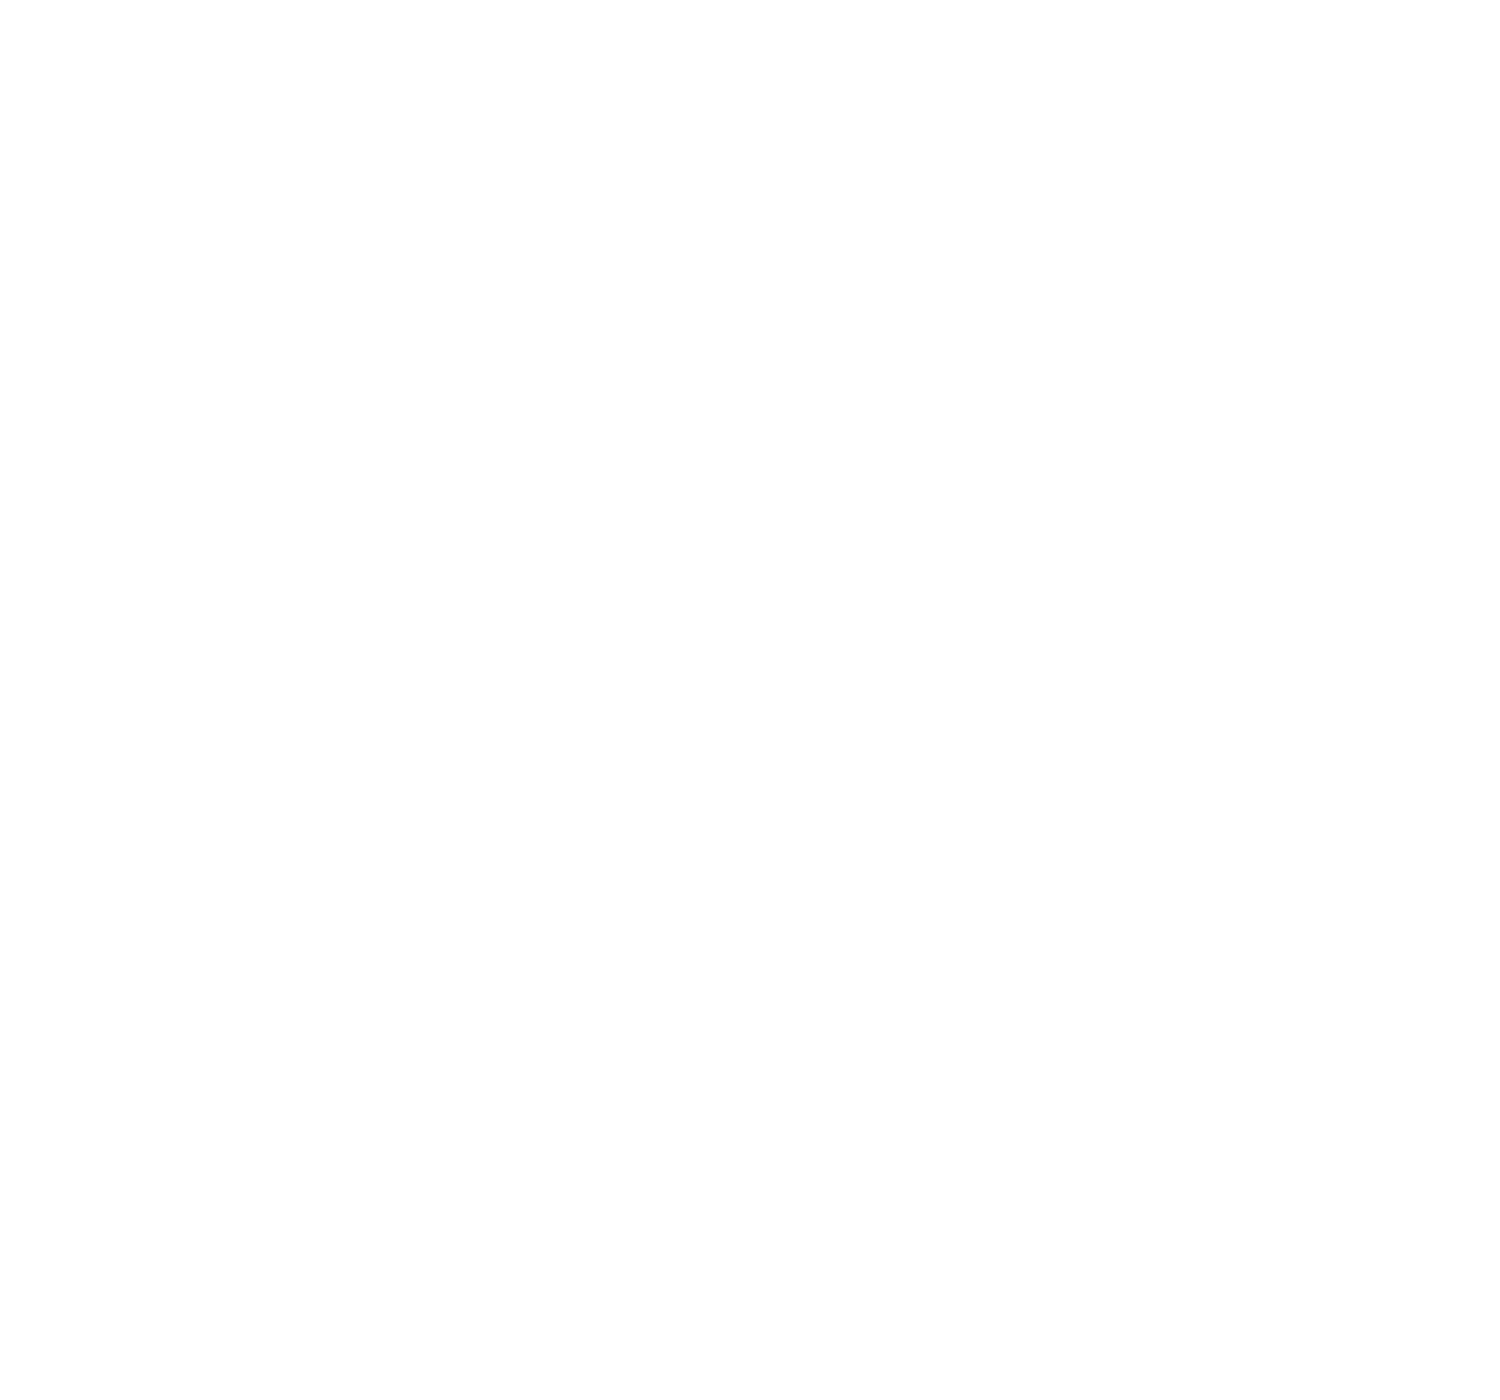 LUK Productions Film- und Videoproduktion aus Berlin